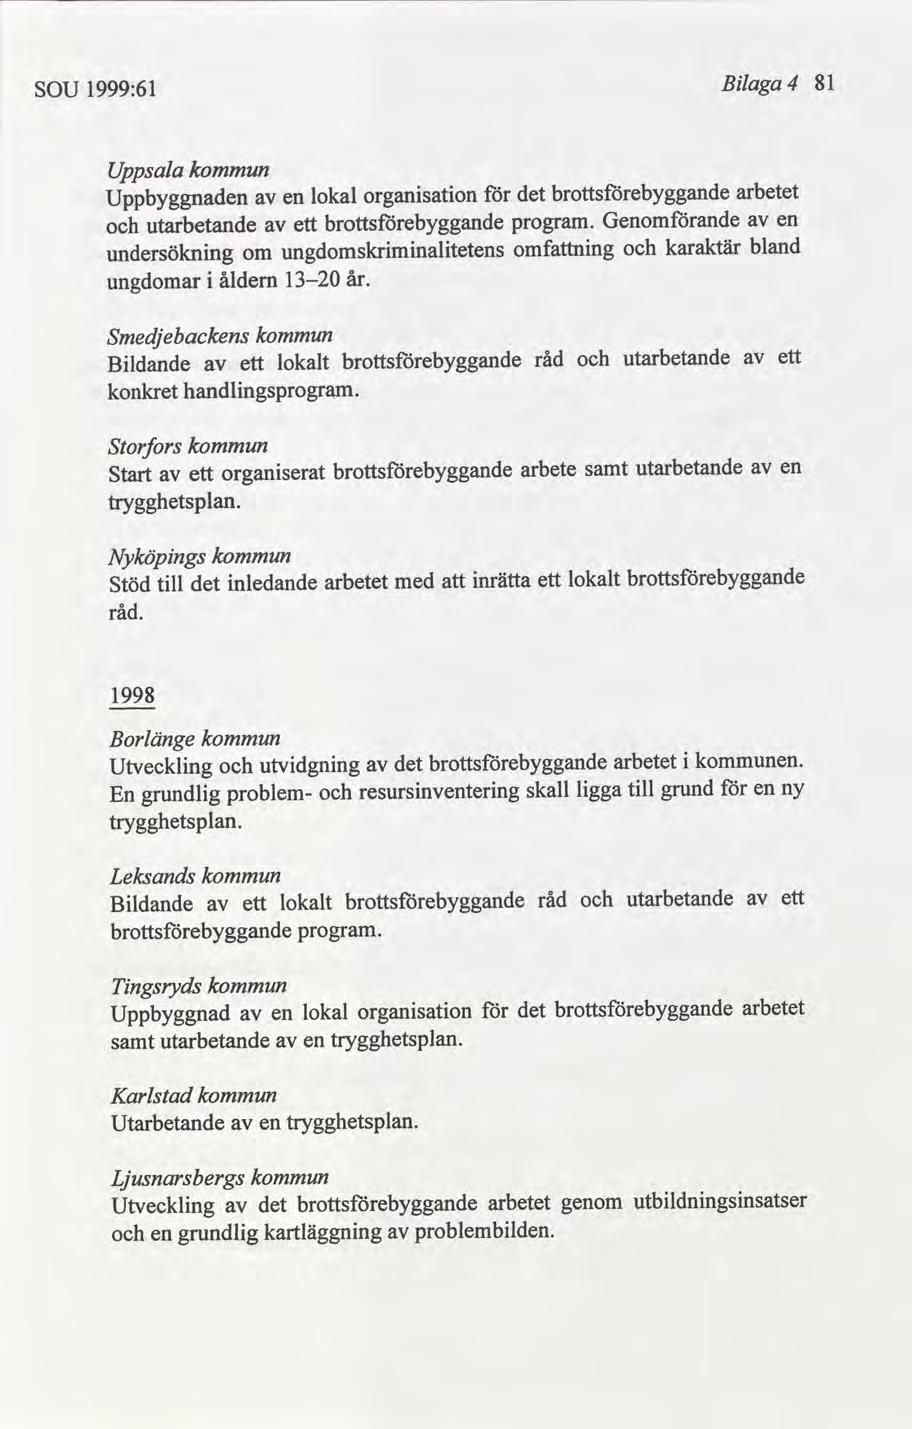 81 Blaga 4 1999:61 SOU Uppsala arbetet organsaton lokal Uppbyggnaden en Genomande en utarbetande ett program. bland karaktär omfnng ungdomskrmnaltetens undersöknng om år.